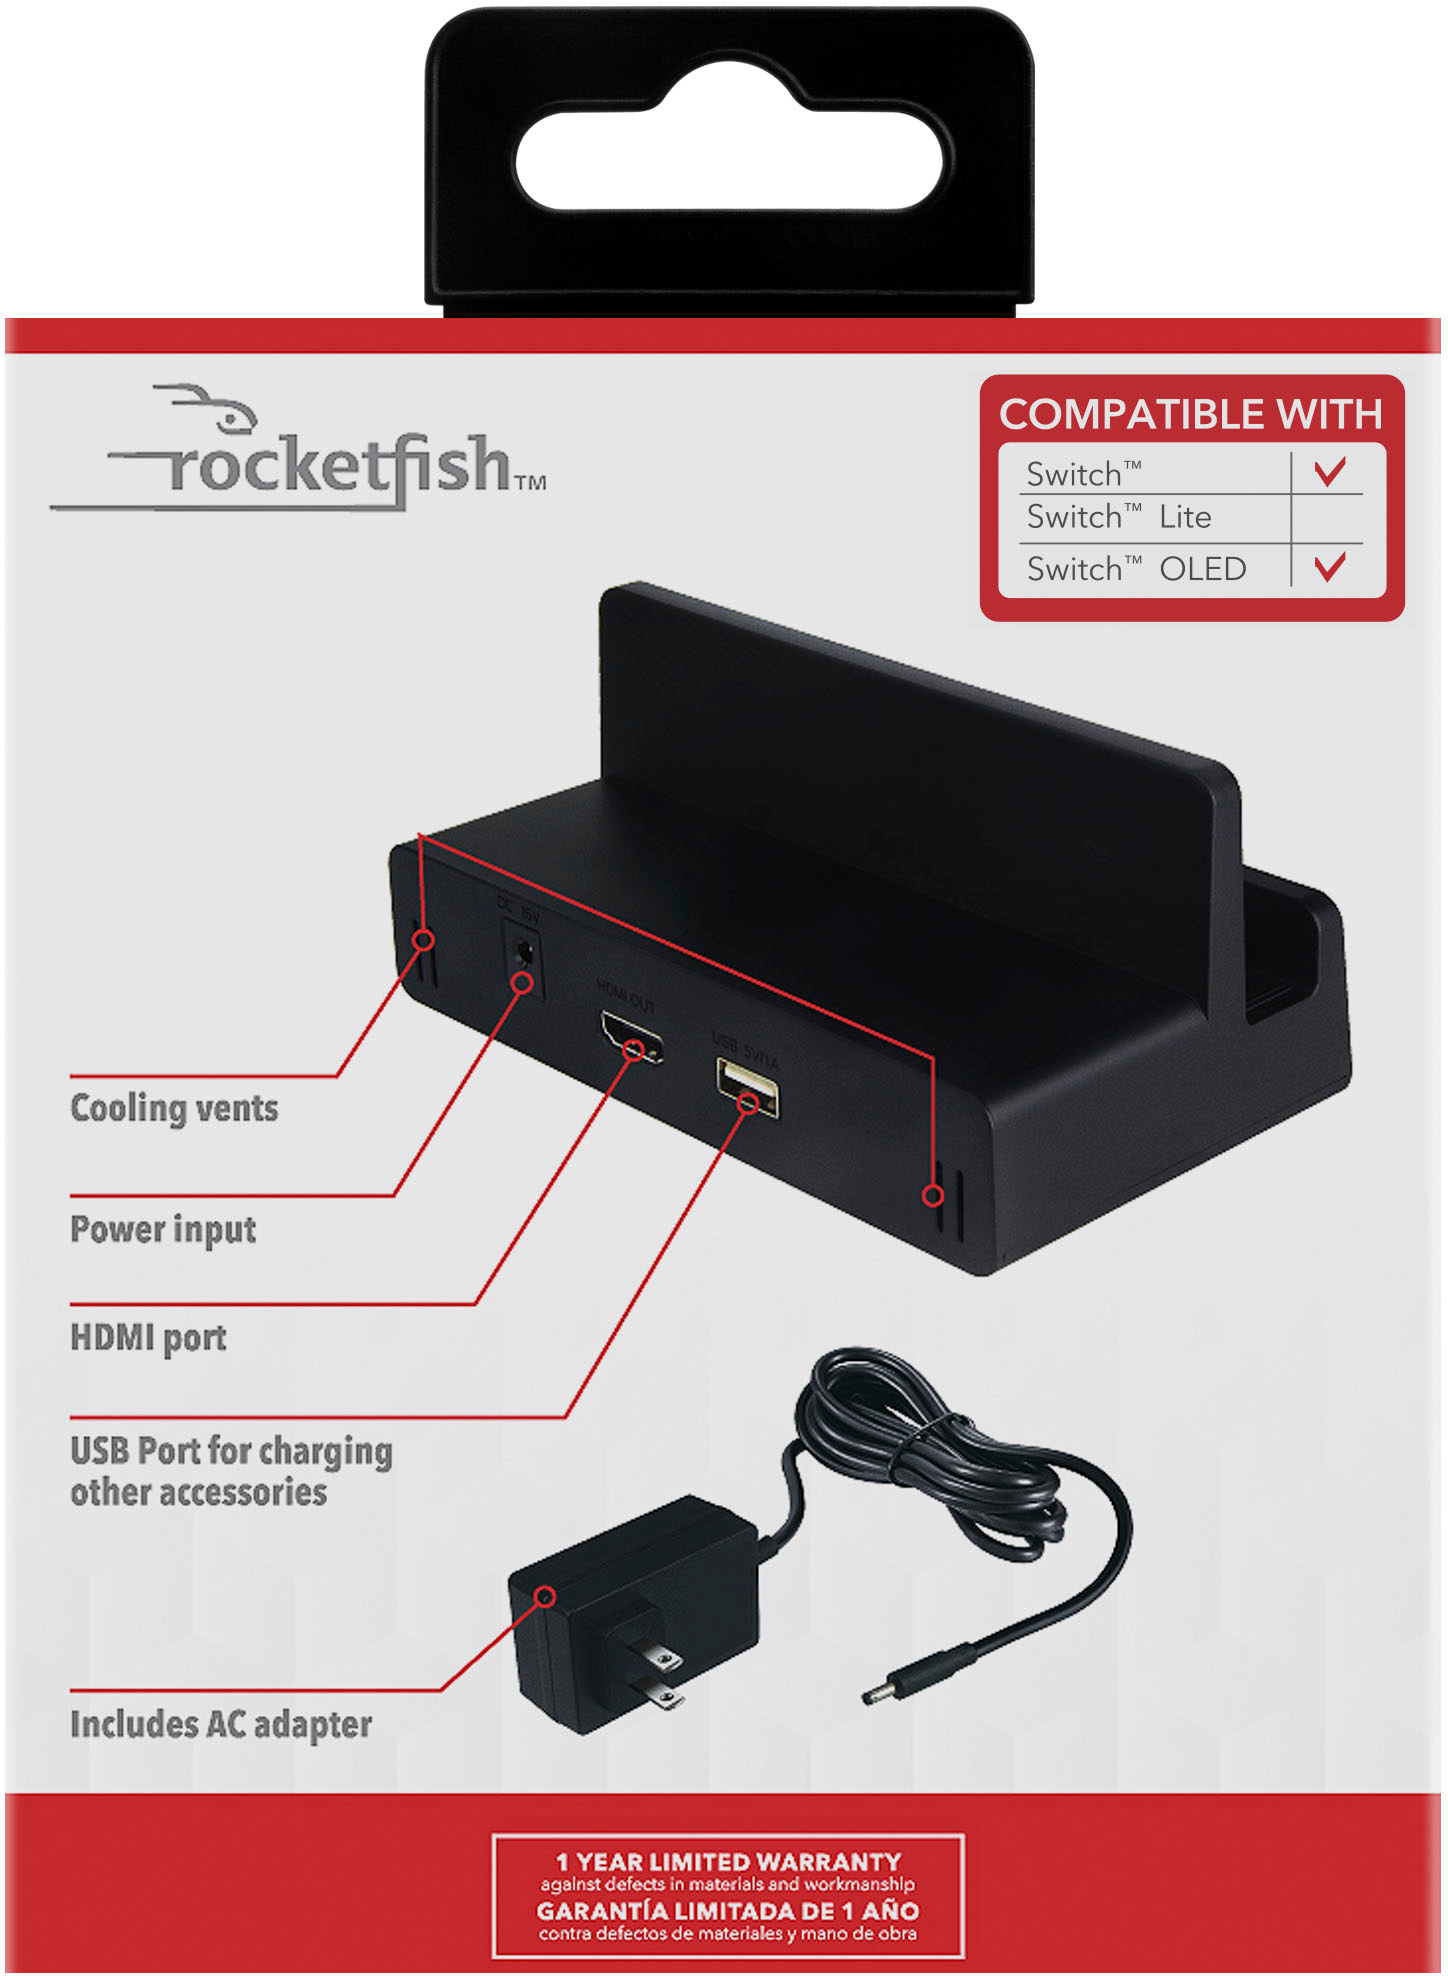 Rocketfish™ TV Dock Kit For Nintendo Switch & Switch OLED Black RF